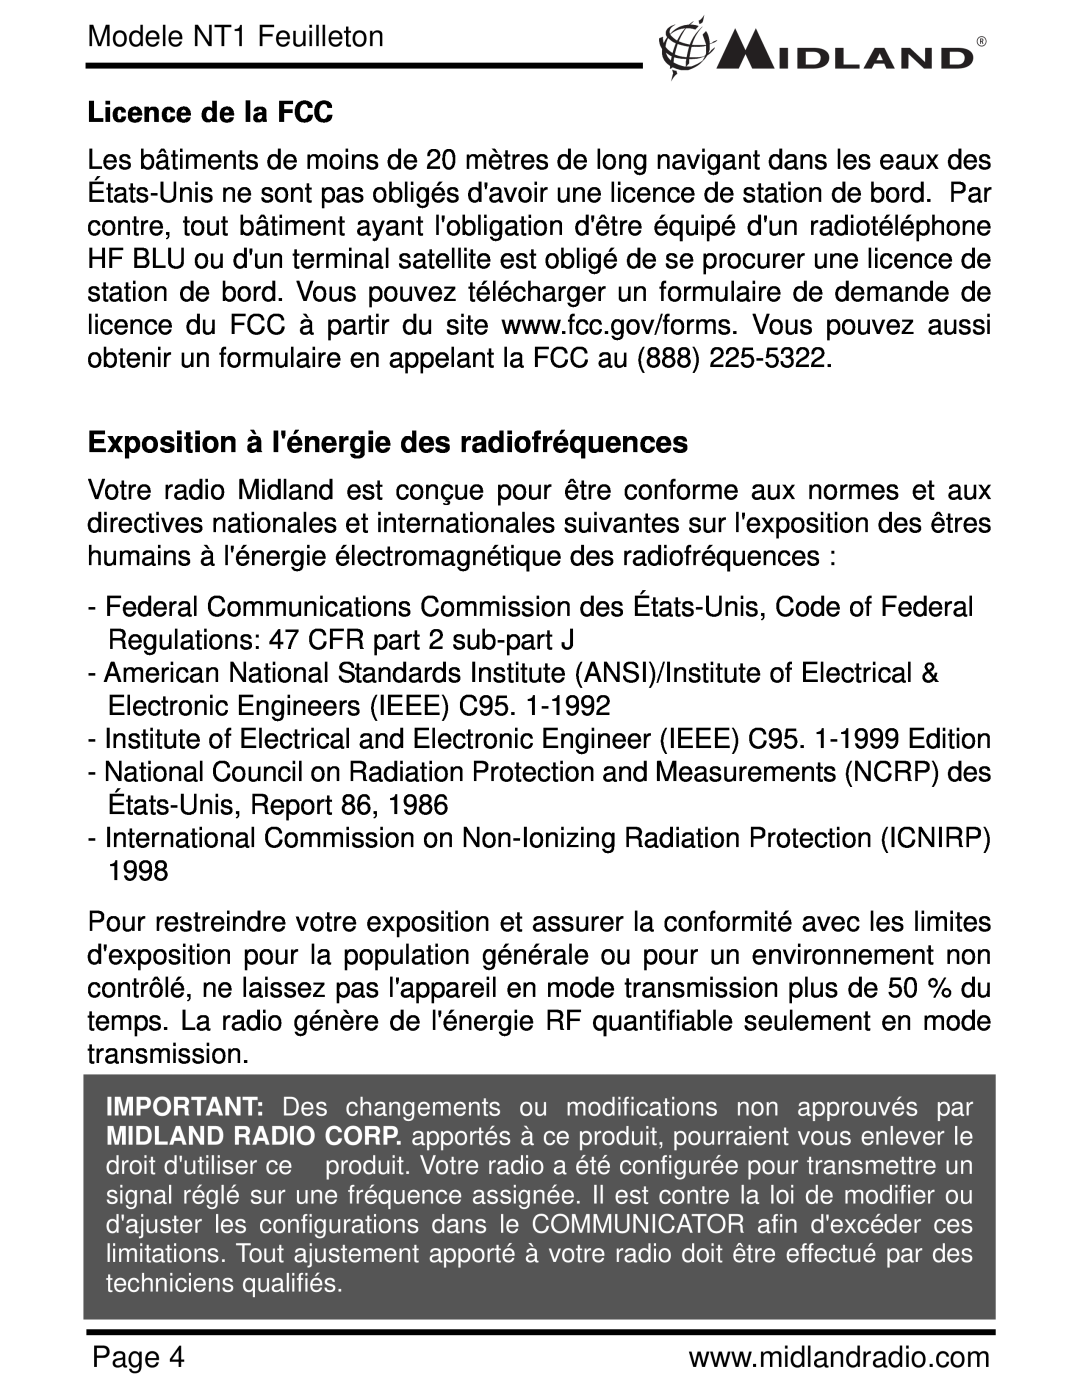 Midland Radio NT1VP, NT1 SERIES Licence de la FCC, Exposition à lénergie des radiofréquences, Modele NT1 Feuilleton 